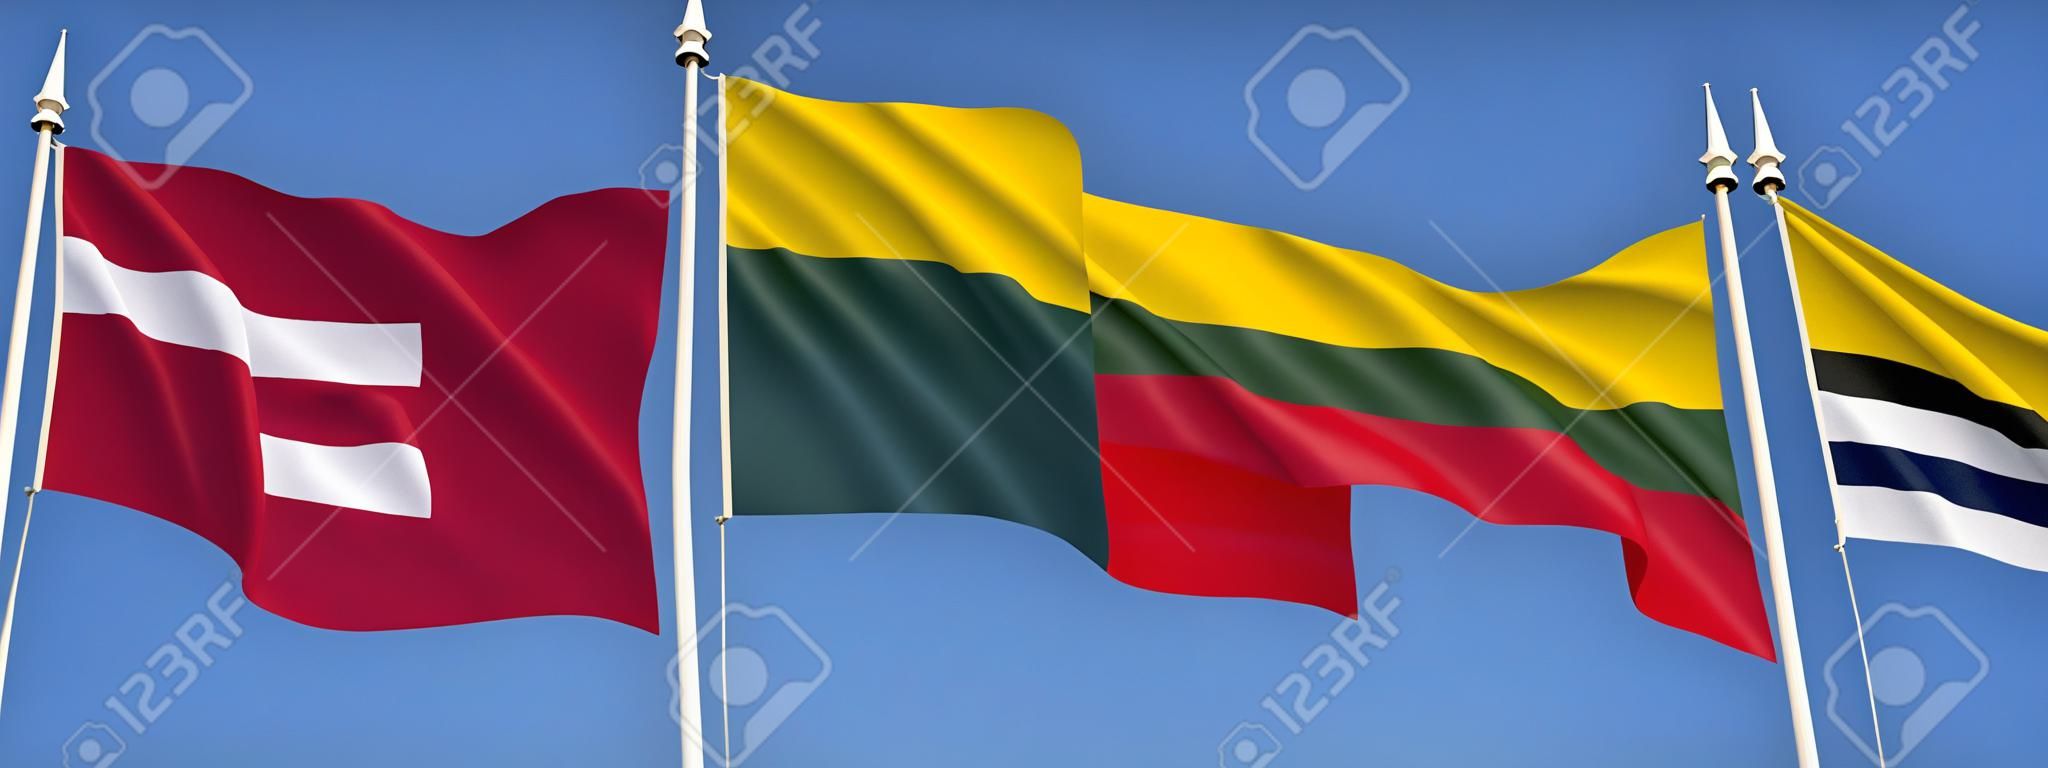 라트비아, 리투아니아, 에스토니아의 발트 해 연안 국가의 깃발.